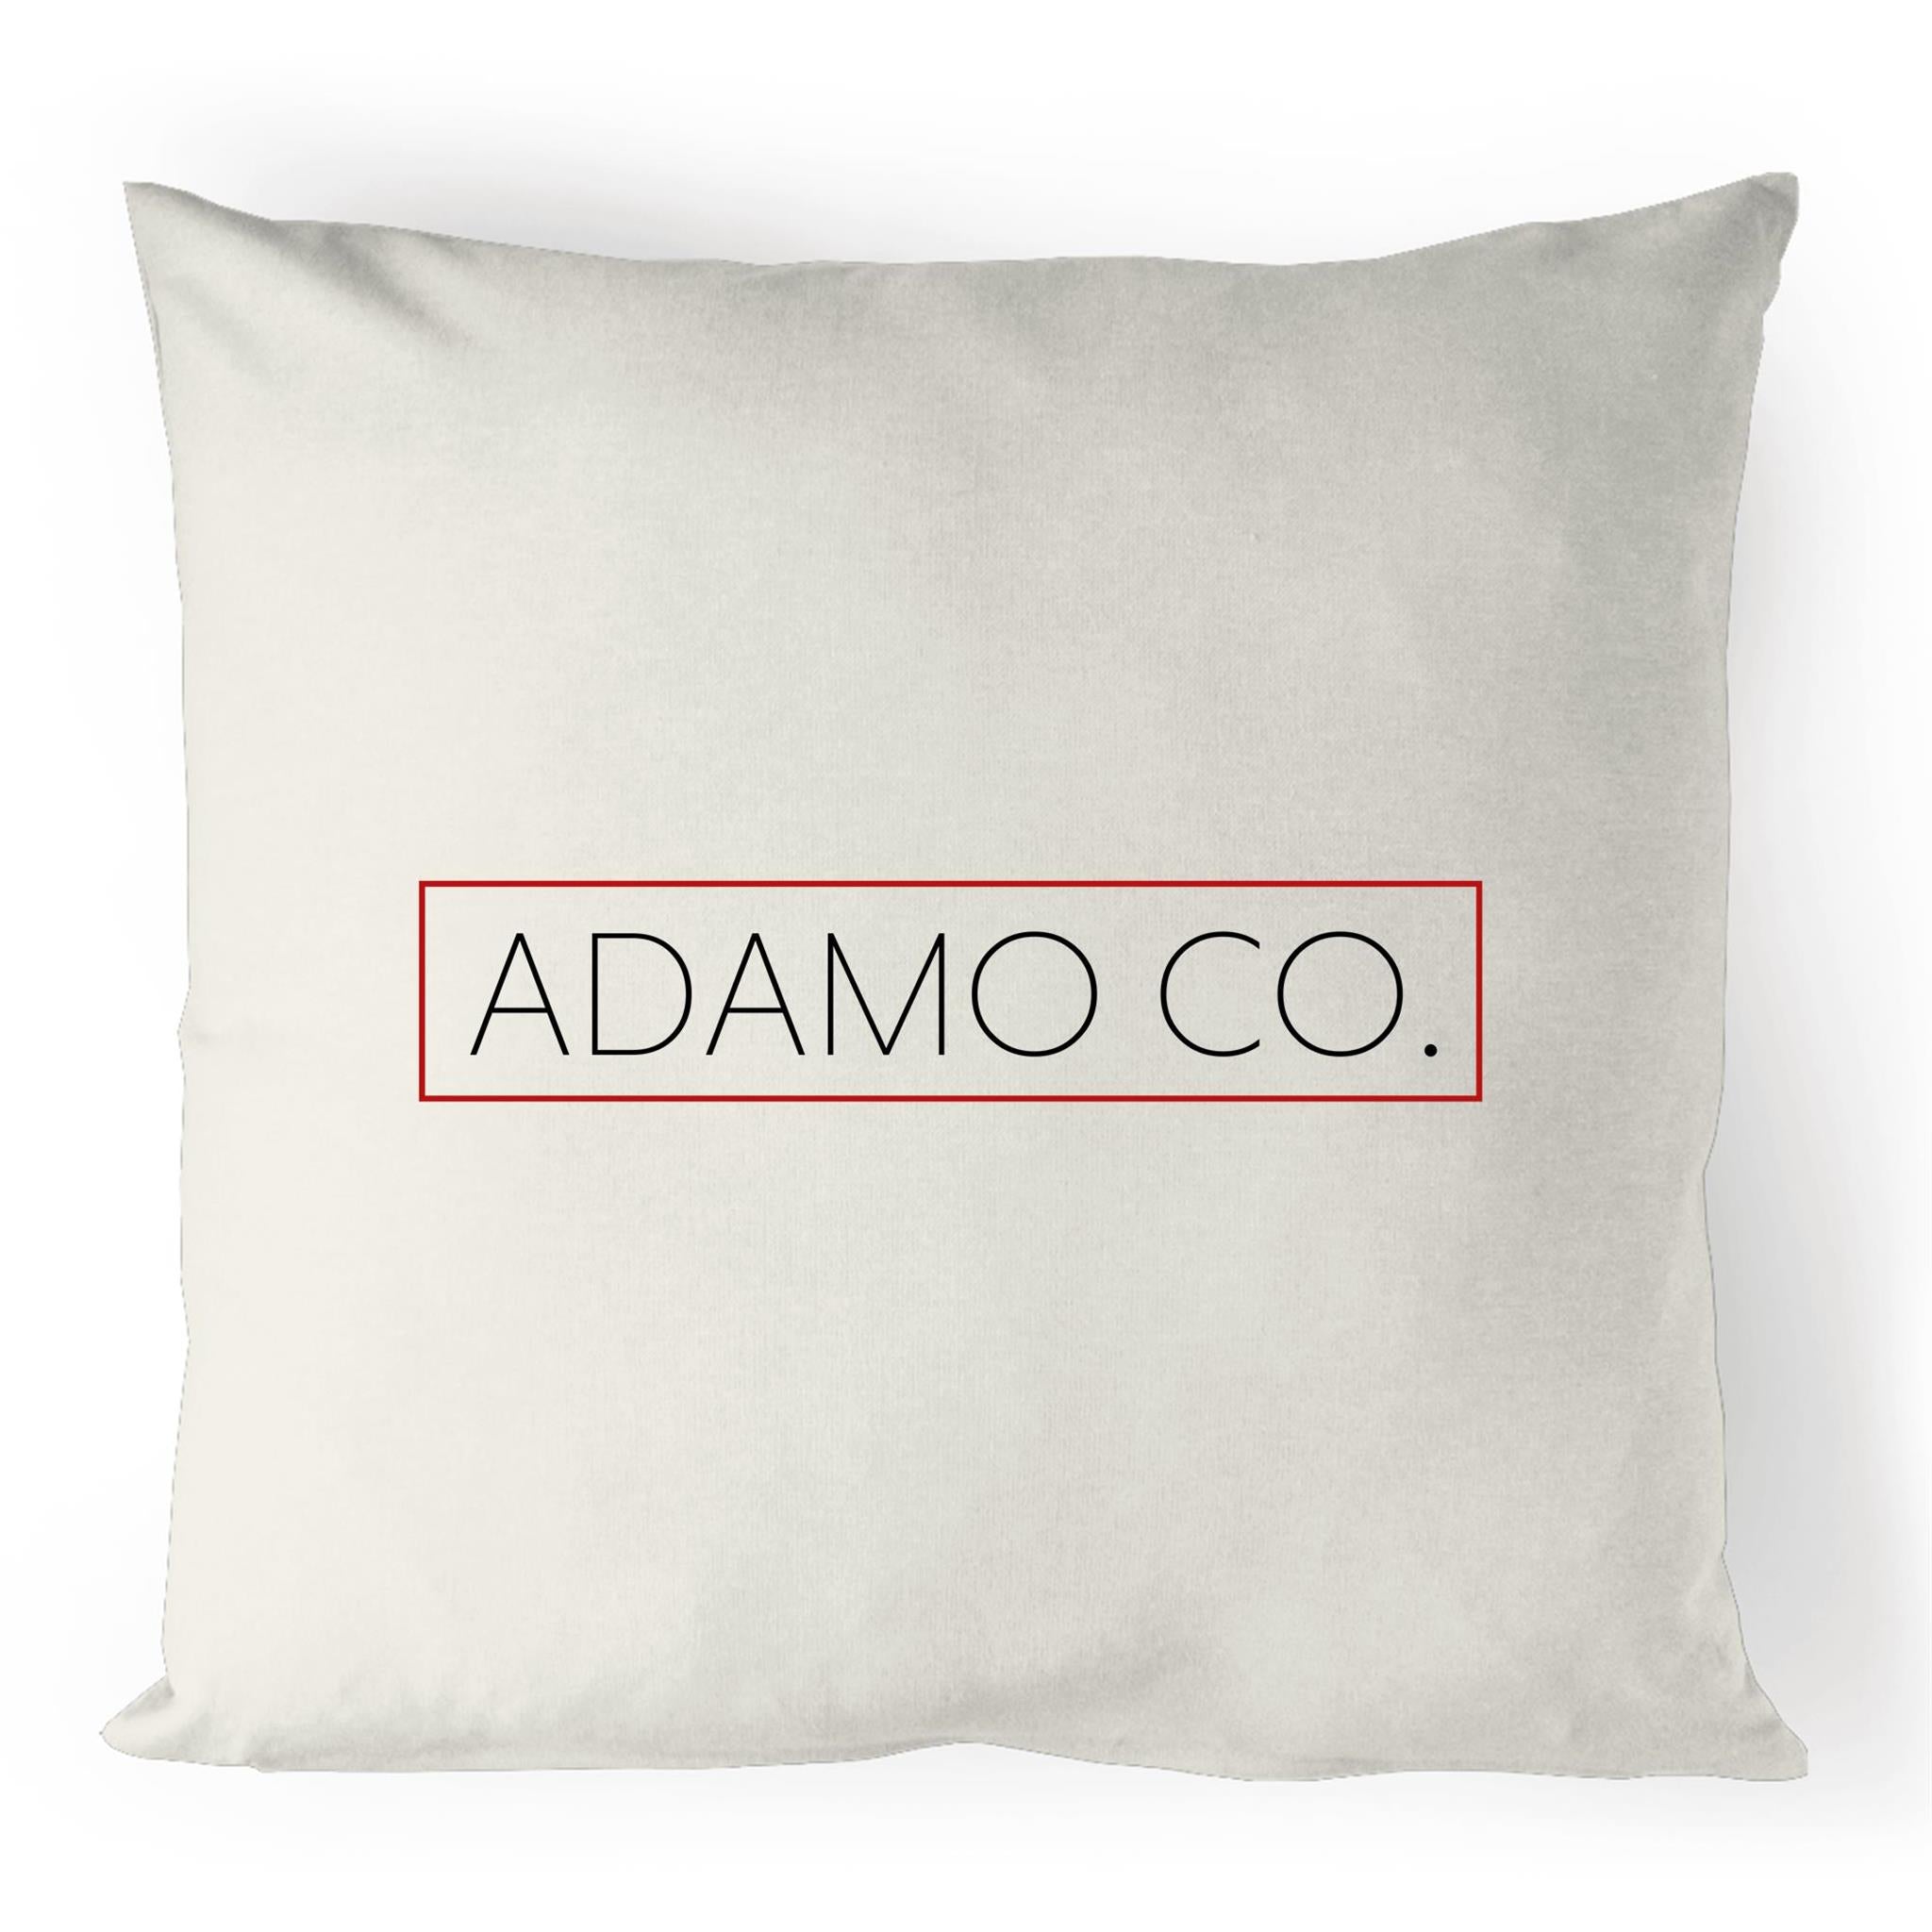 ADAMO CO. 100% Linen Cushion Cover - ADAMO CO.